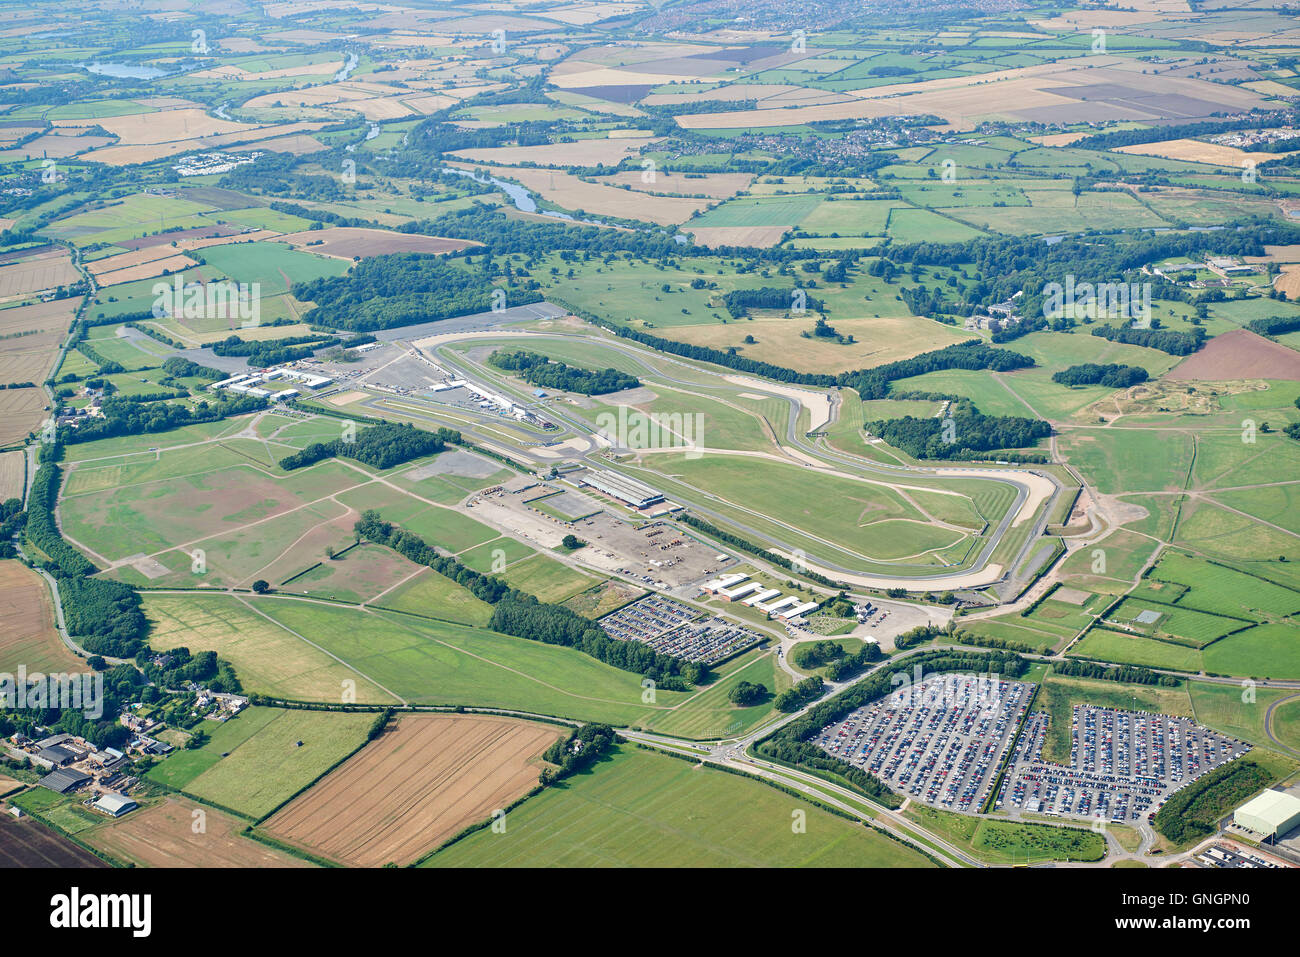 Donnington Park, Circuit de course automobile, East Midlands, Angleterre, RU Banque D'Images